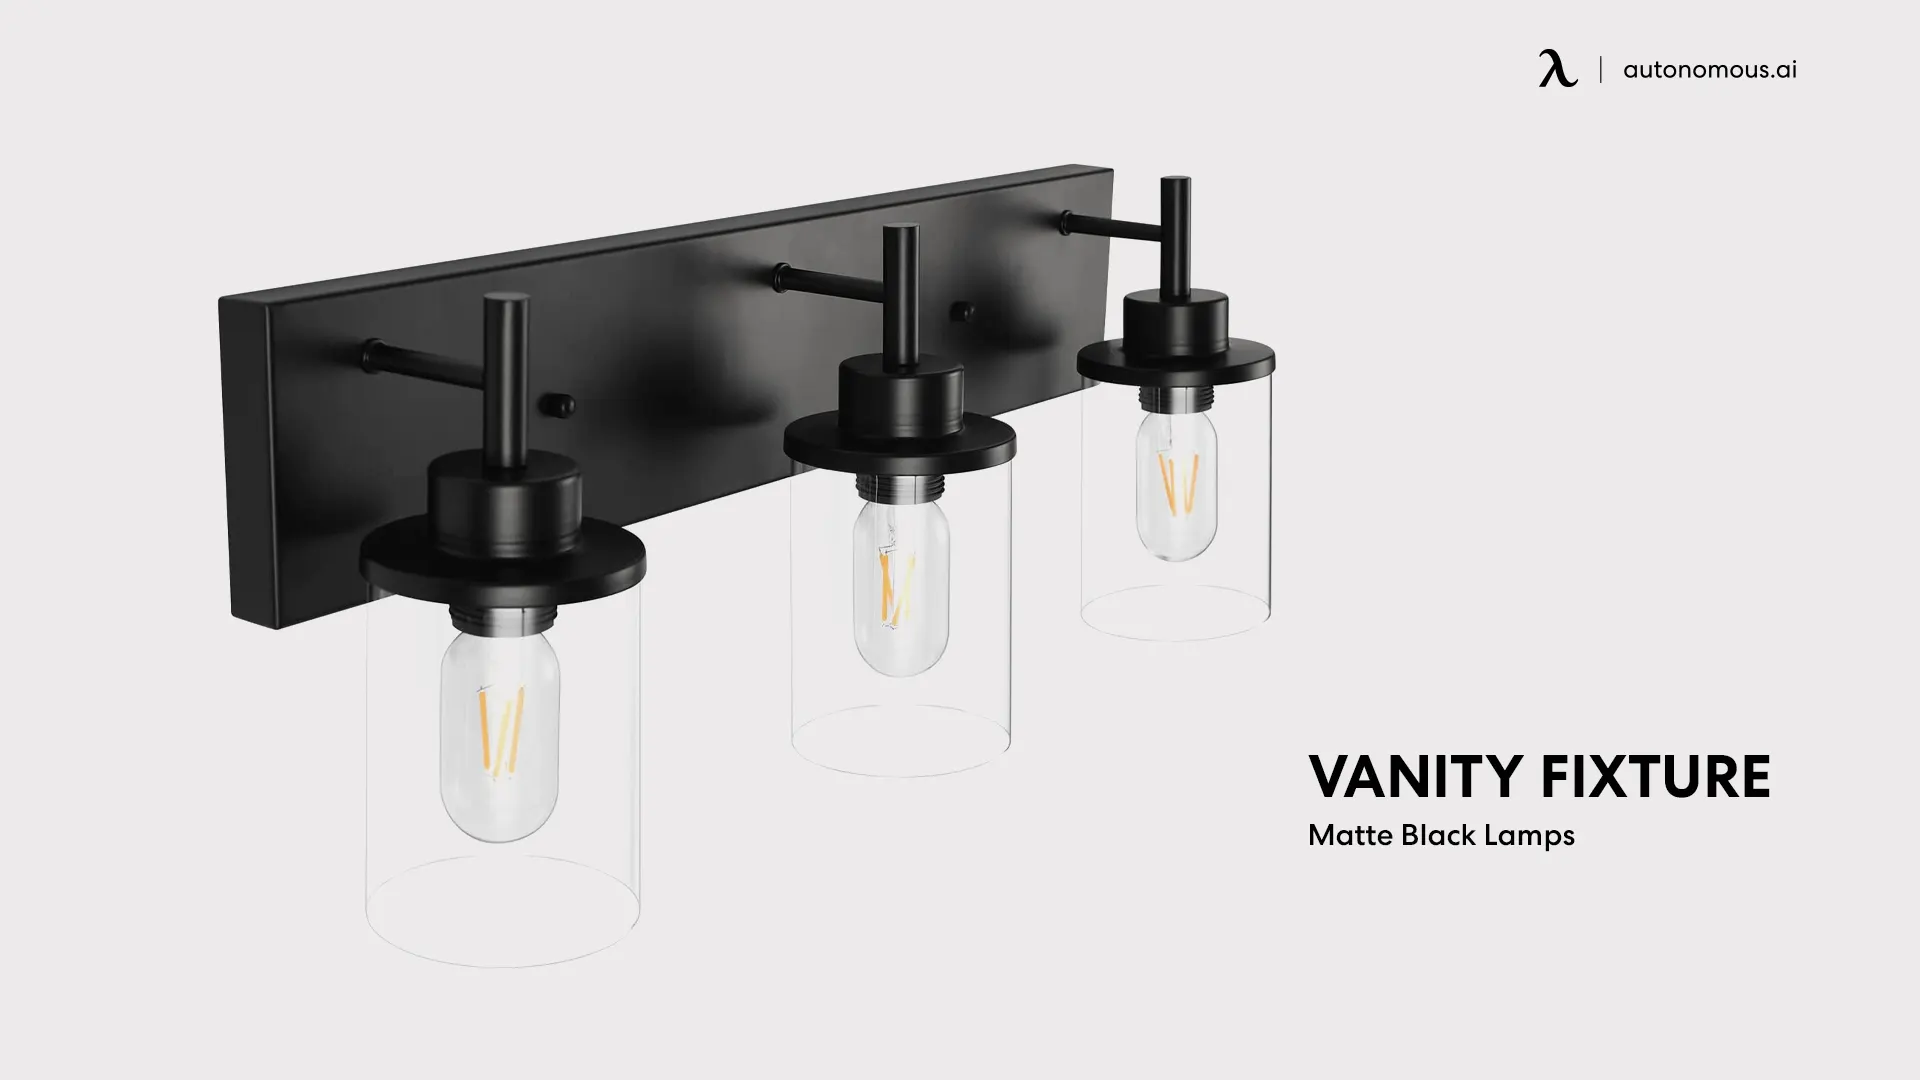 Vanity Fixture, Matte Black living room lamp